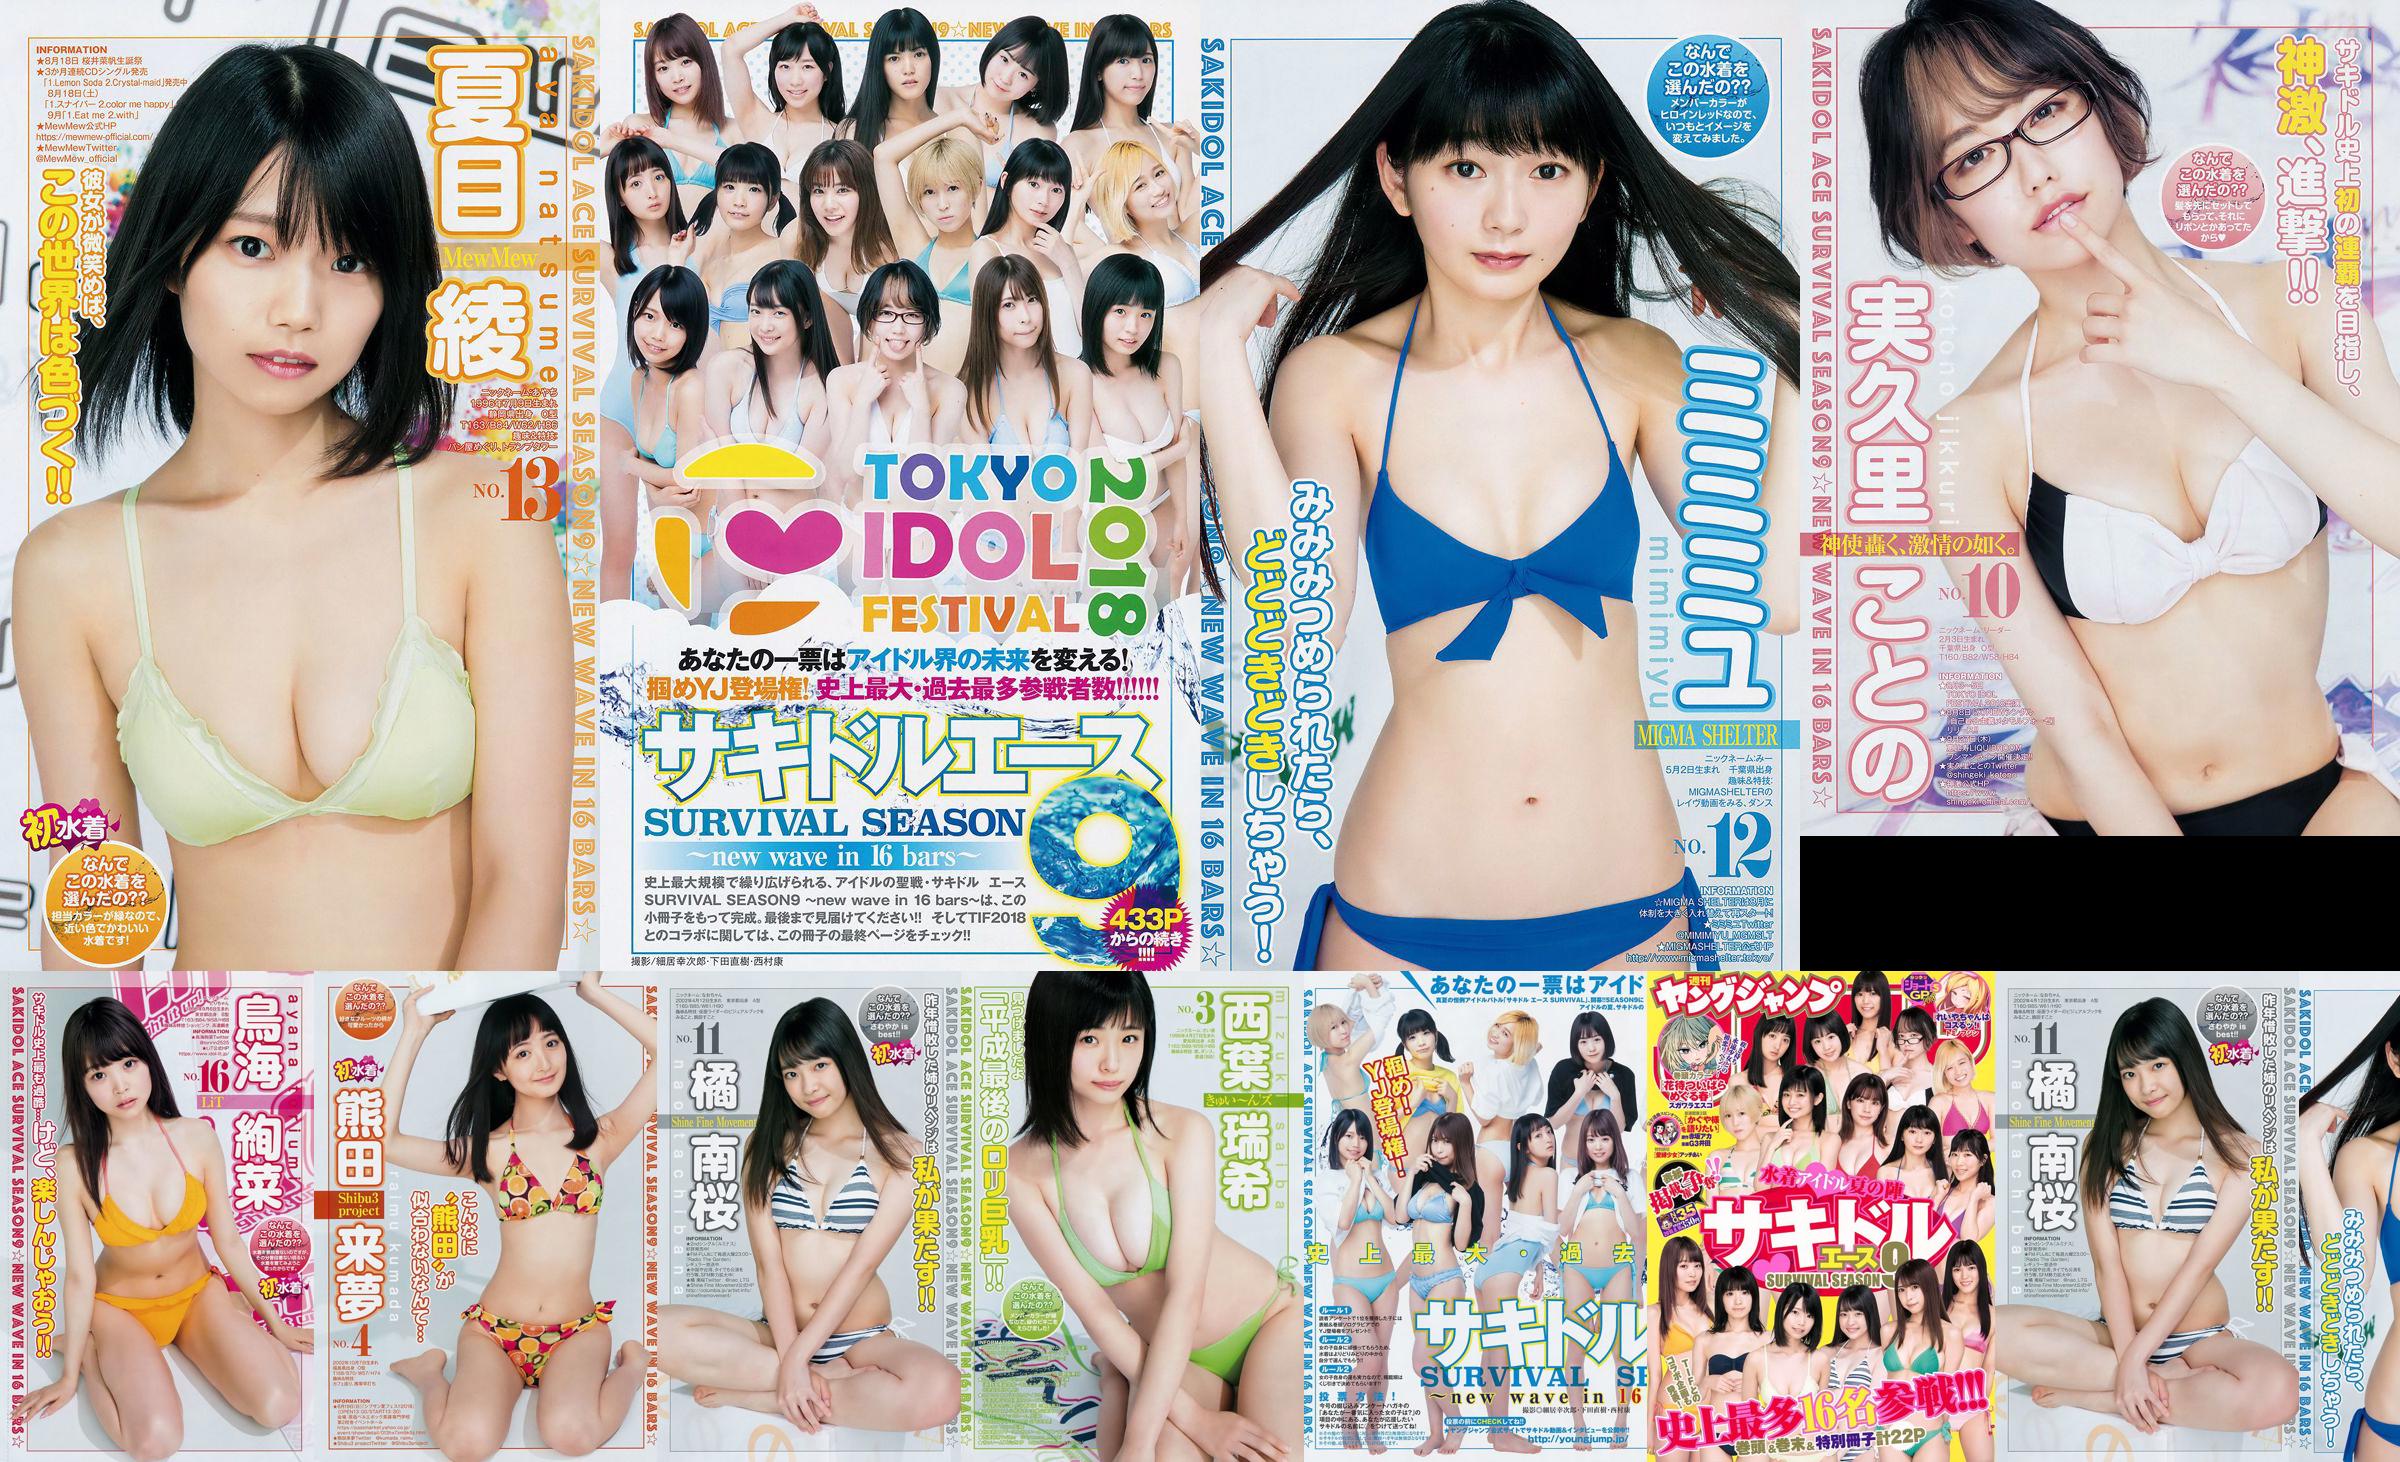 [FLASH] Ikumi Hisamatsu Risa Hirako Ren Ishikawa Angel Moe AKB48 Kaho Shibuya Misuzu Hayashi Ririka 2015.04.21 Photo Toshi No.40a0d8 Page 11